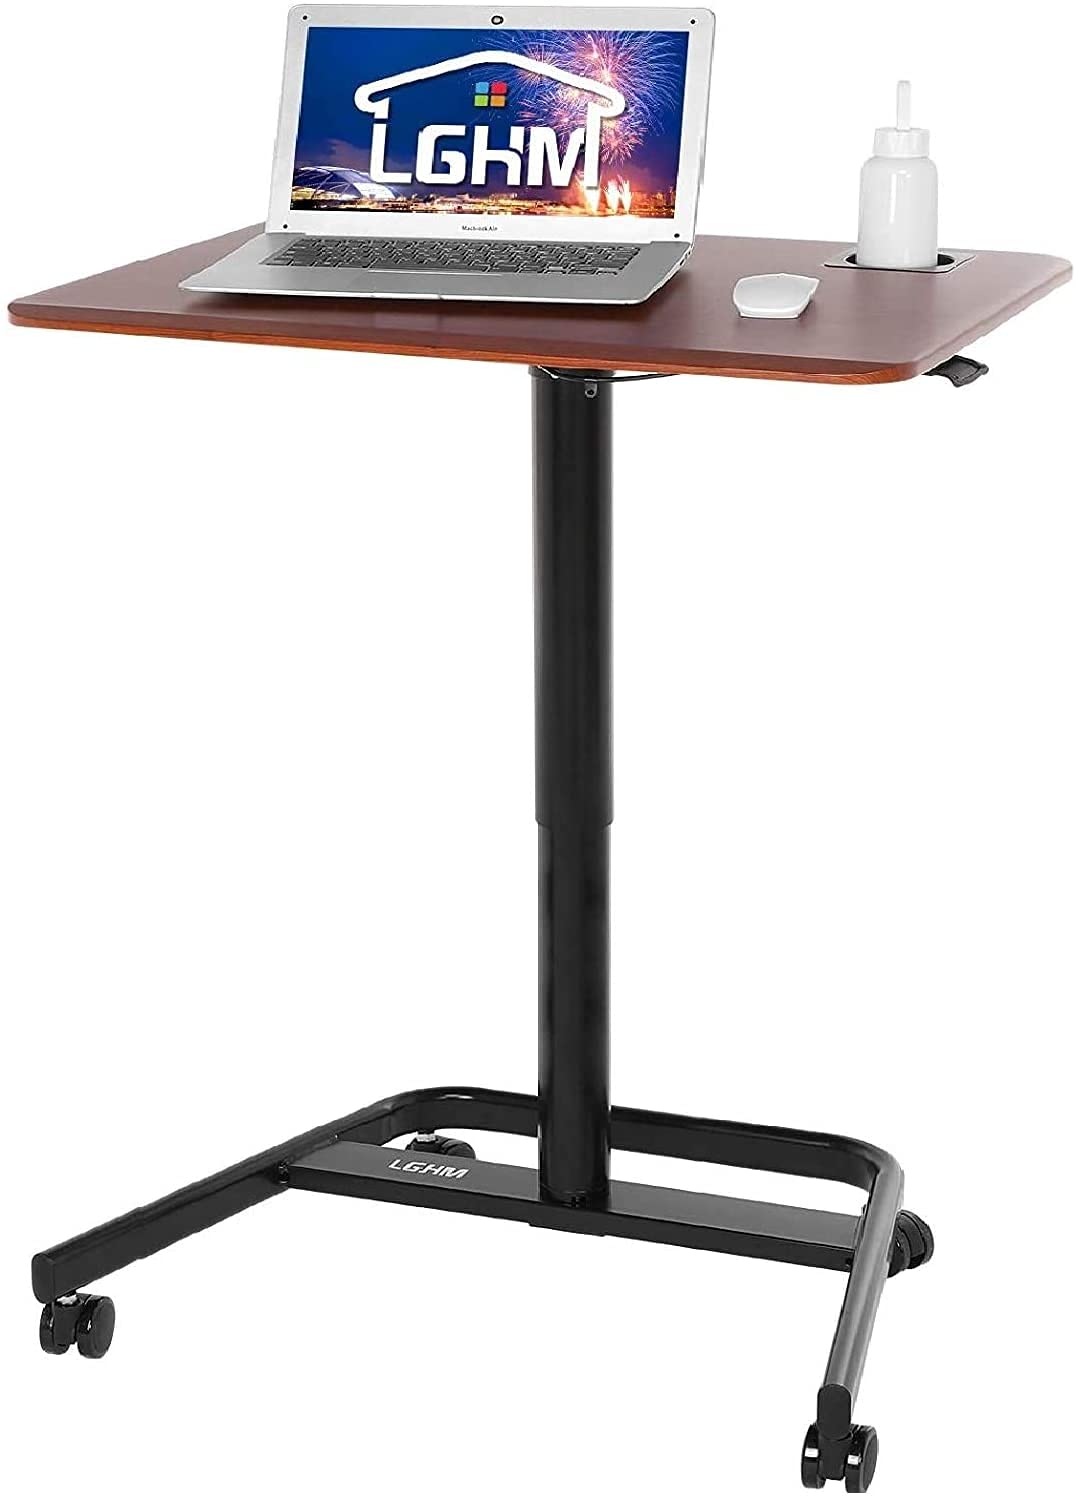 Rolling Desk, LGHM Mobile Standing Desk Adjustable Height, Pneumatic Rolling Laptop Desk w/Lockable Casters, Standup Desk Home Office w/Cupholder (...